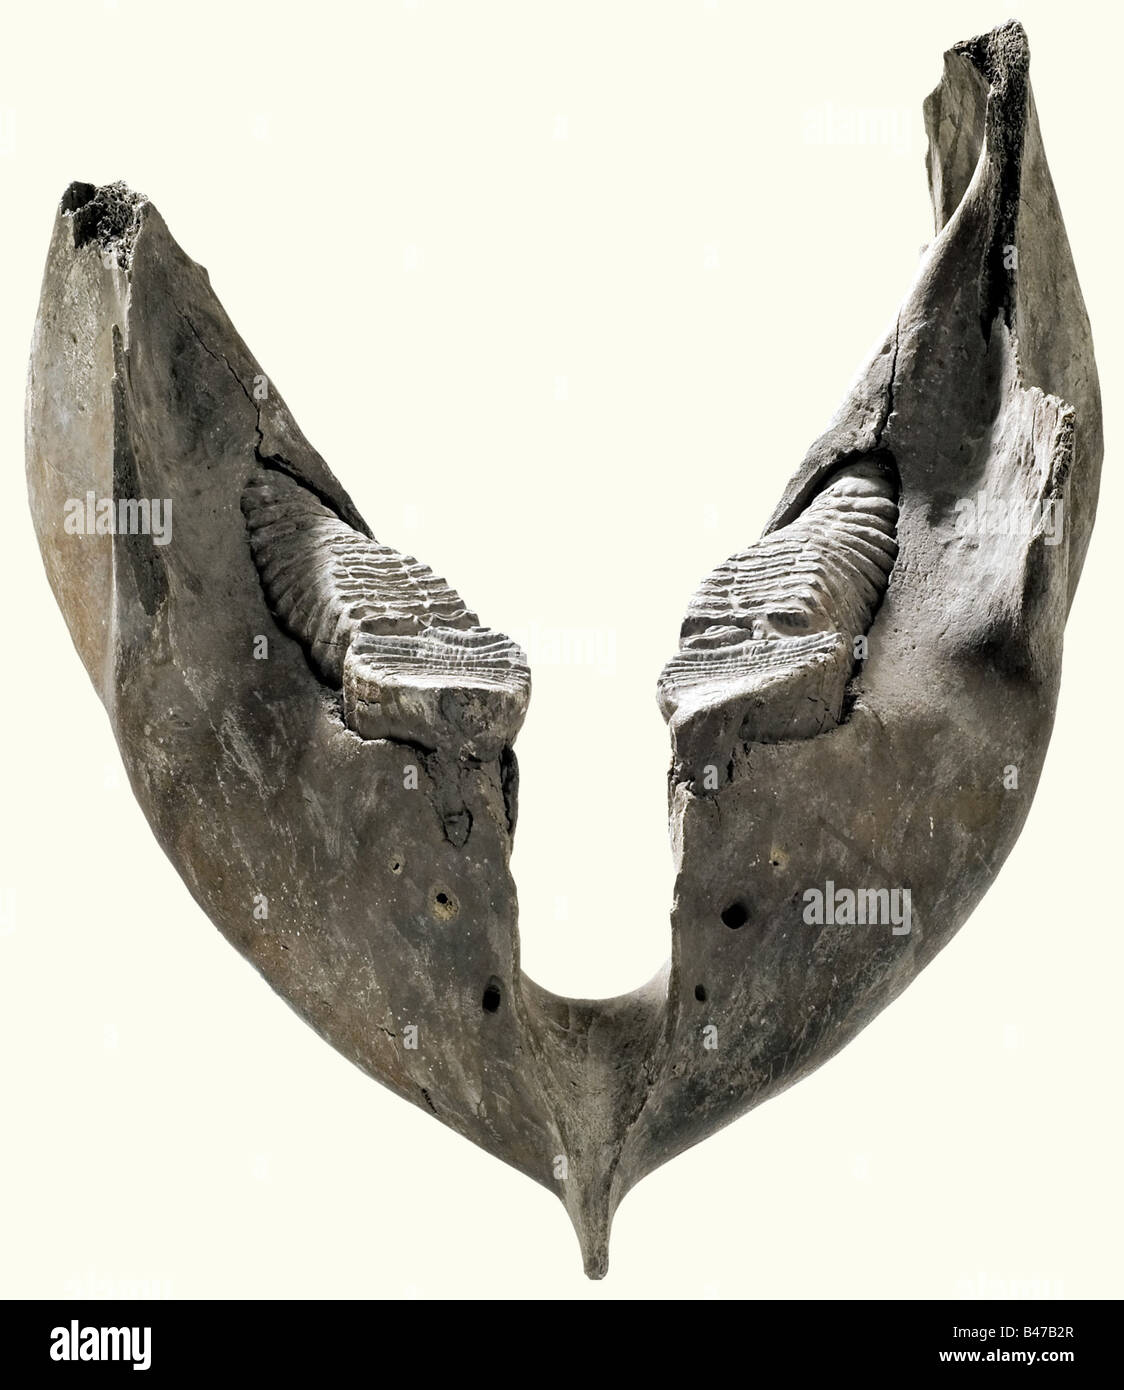 La mâchoire inférieure d'un mammouth, l'Europe centrale, âge d'environ 50 000 ans mâchoire inférieure lourde pour le mammouth européen de Woolly (Mammuthus primigenius), qui a été distribué dans toute l'Europe et l'Asie du Nord au cours de la dernière période glaciaire. Quatre dents de meulage complètement préservées avec une surface supérieure rainurée. La charnière de la mâchoire est incomplète/manquante. Largeur 49 cm. Longueur 55 cm. Historique, historique, préhistoire, artisanat, artisanat, artisanat, objets, objets, photos, coupures, coupures, découpe, découpes, beaux-arts, art, art, art artistique, artistique, artistique Banque D'Images